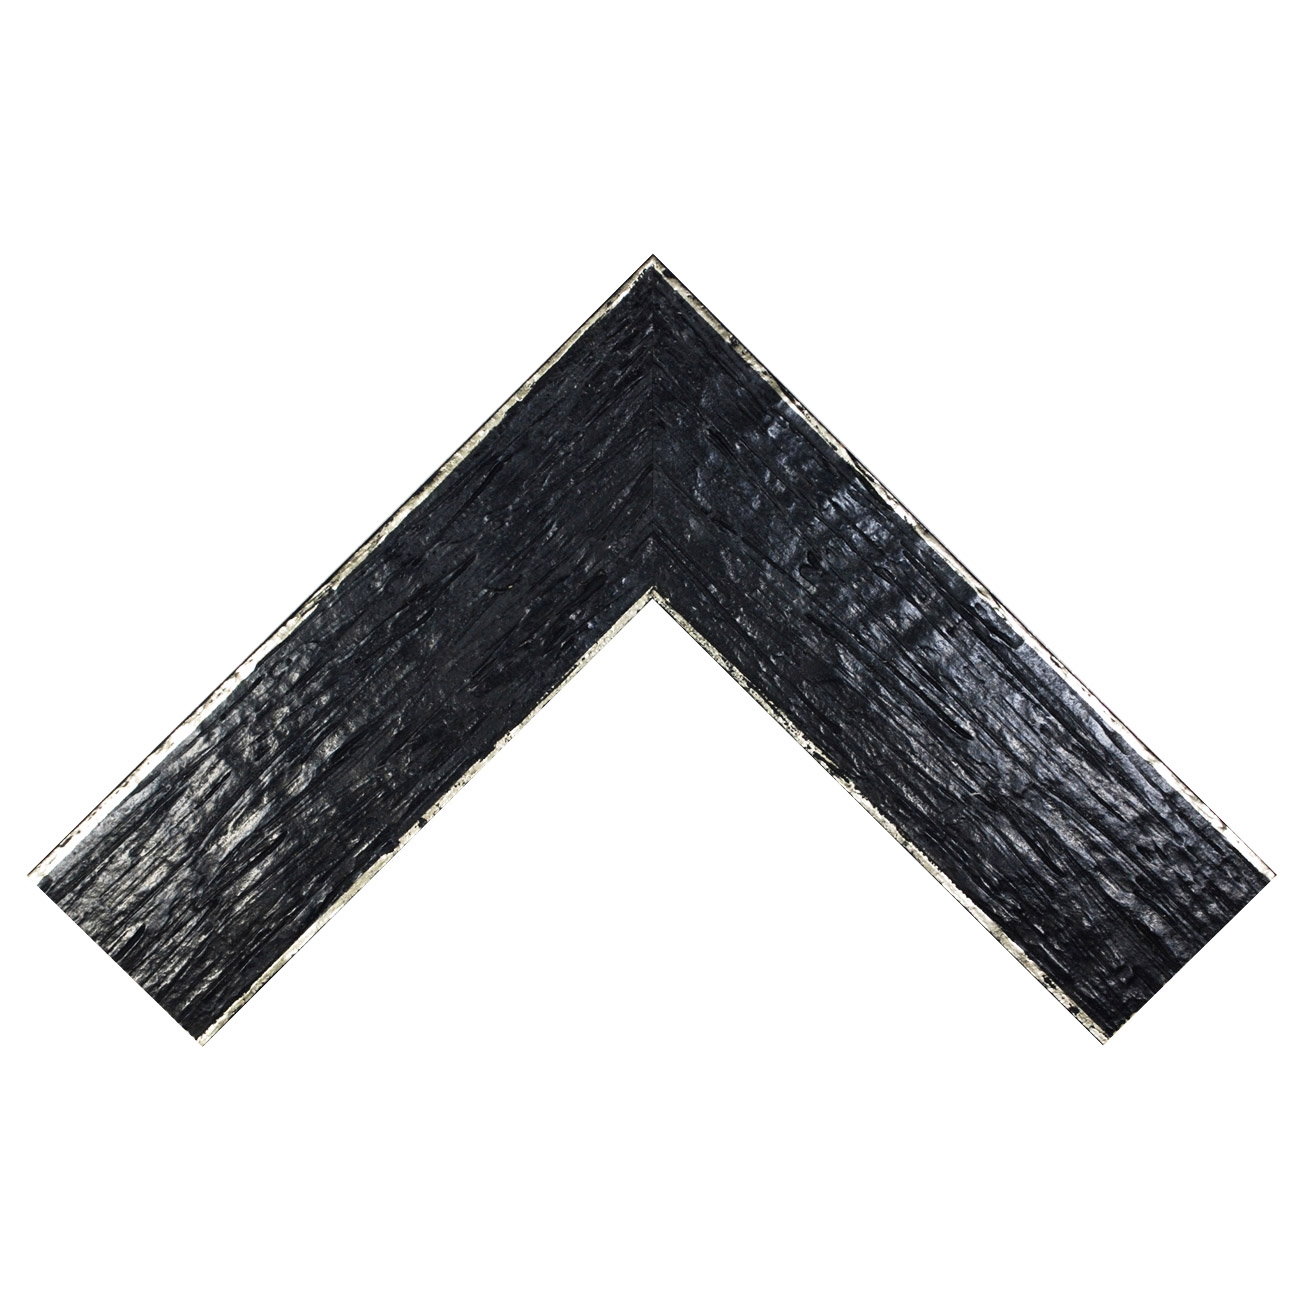 Baguette bois profil plat largeur 9.6cm couleur noir filet argent chaud sur les bords antique